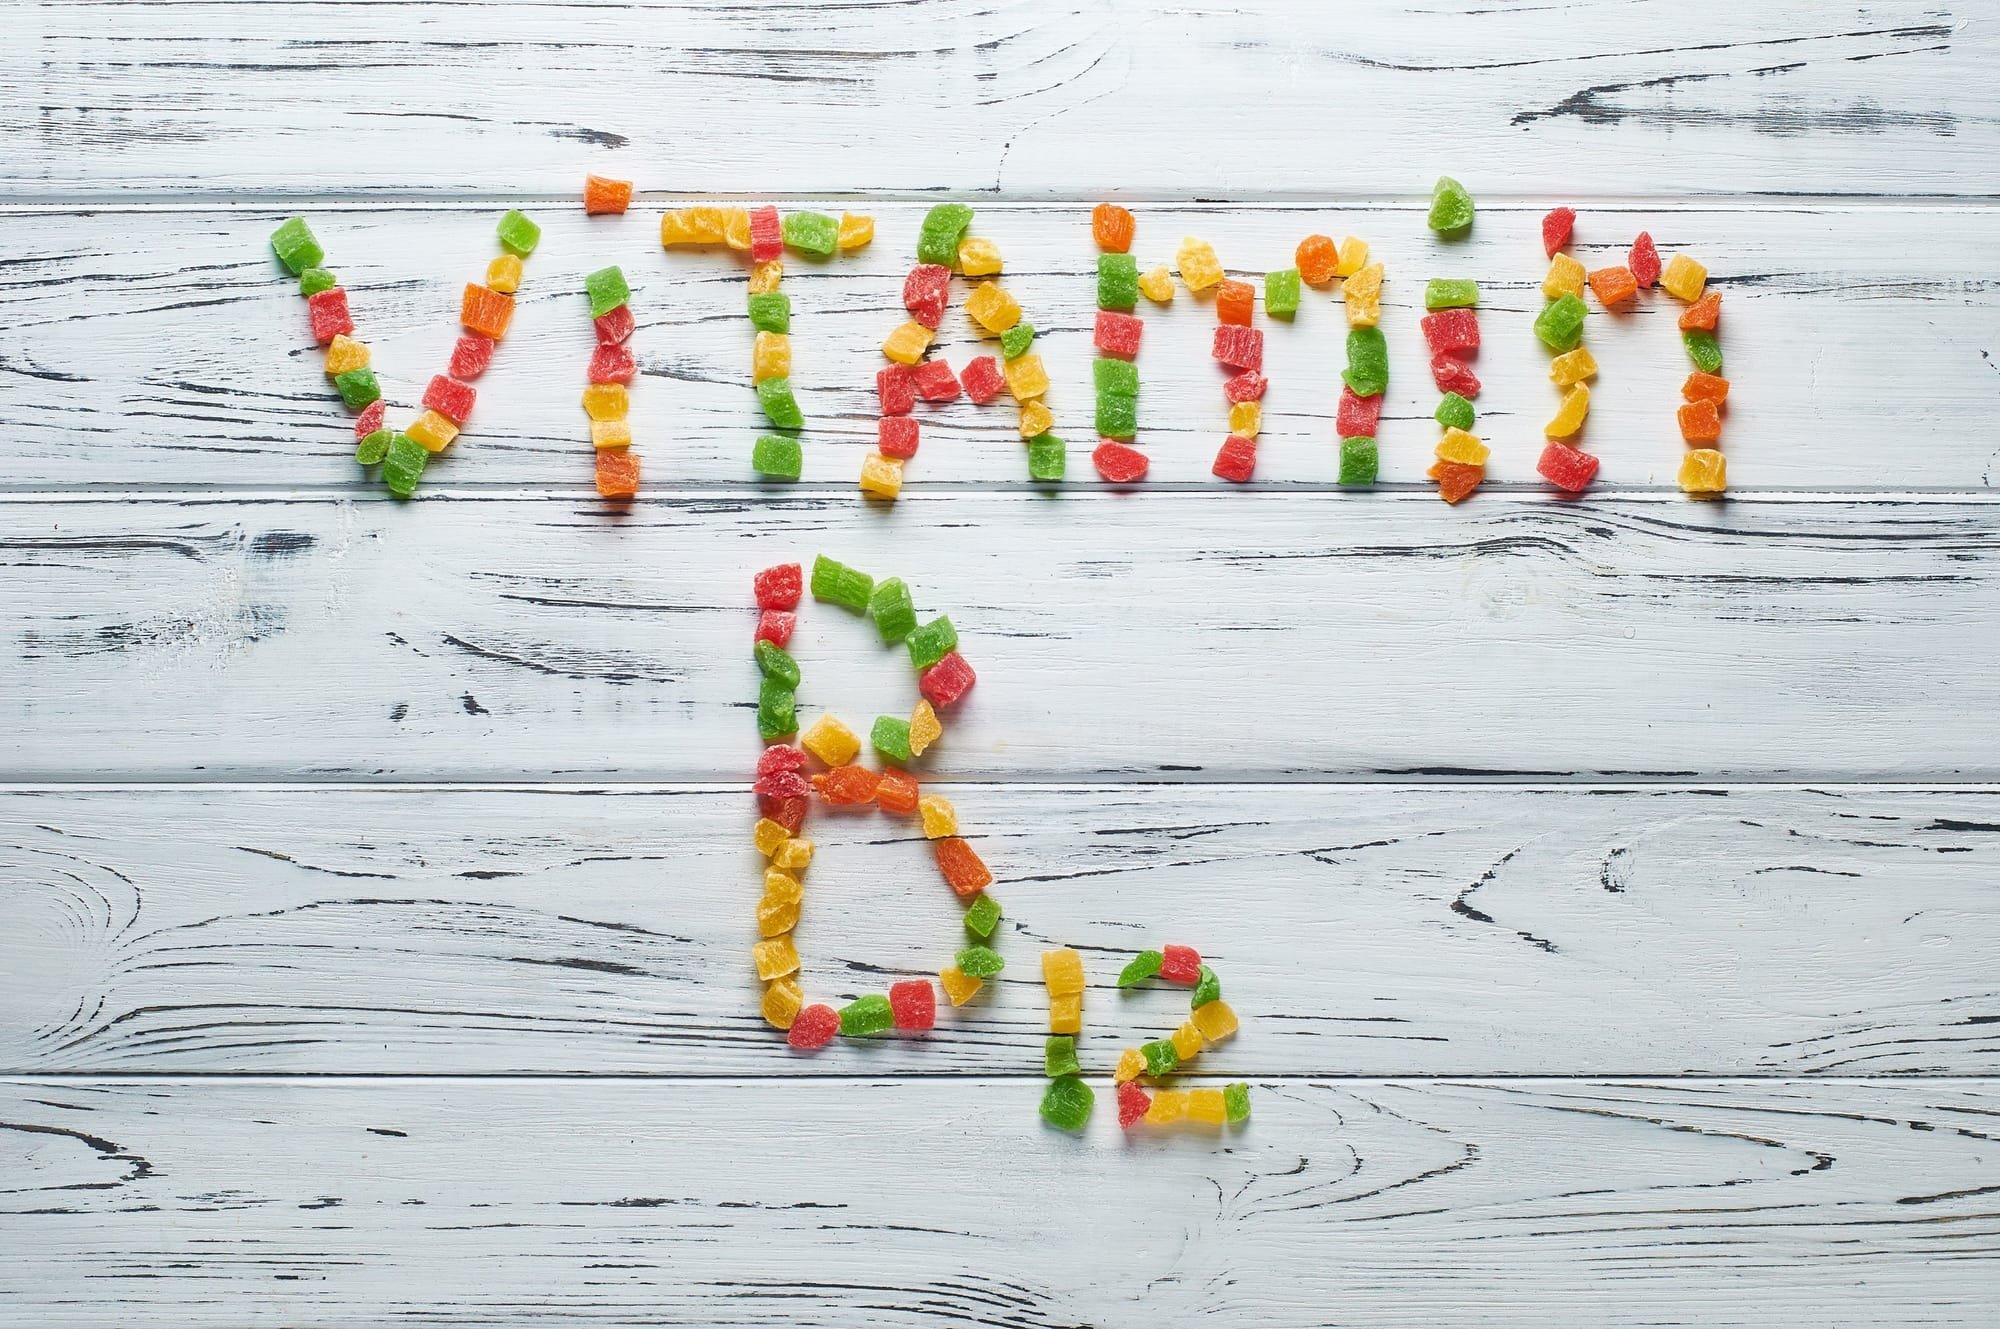 علامة تحذير رئيسية لنقص فيتامين B12 في الجسم!